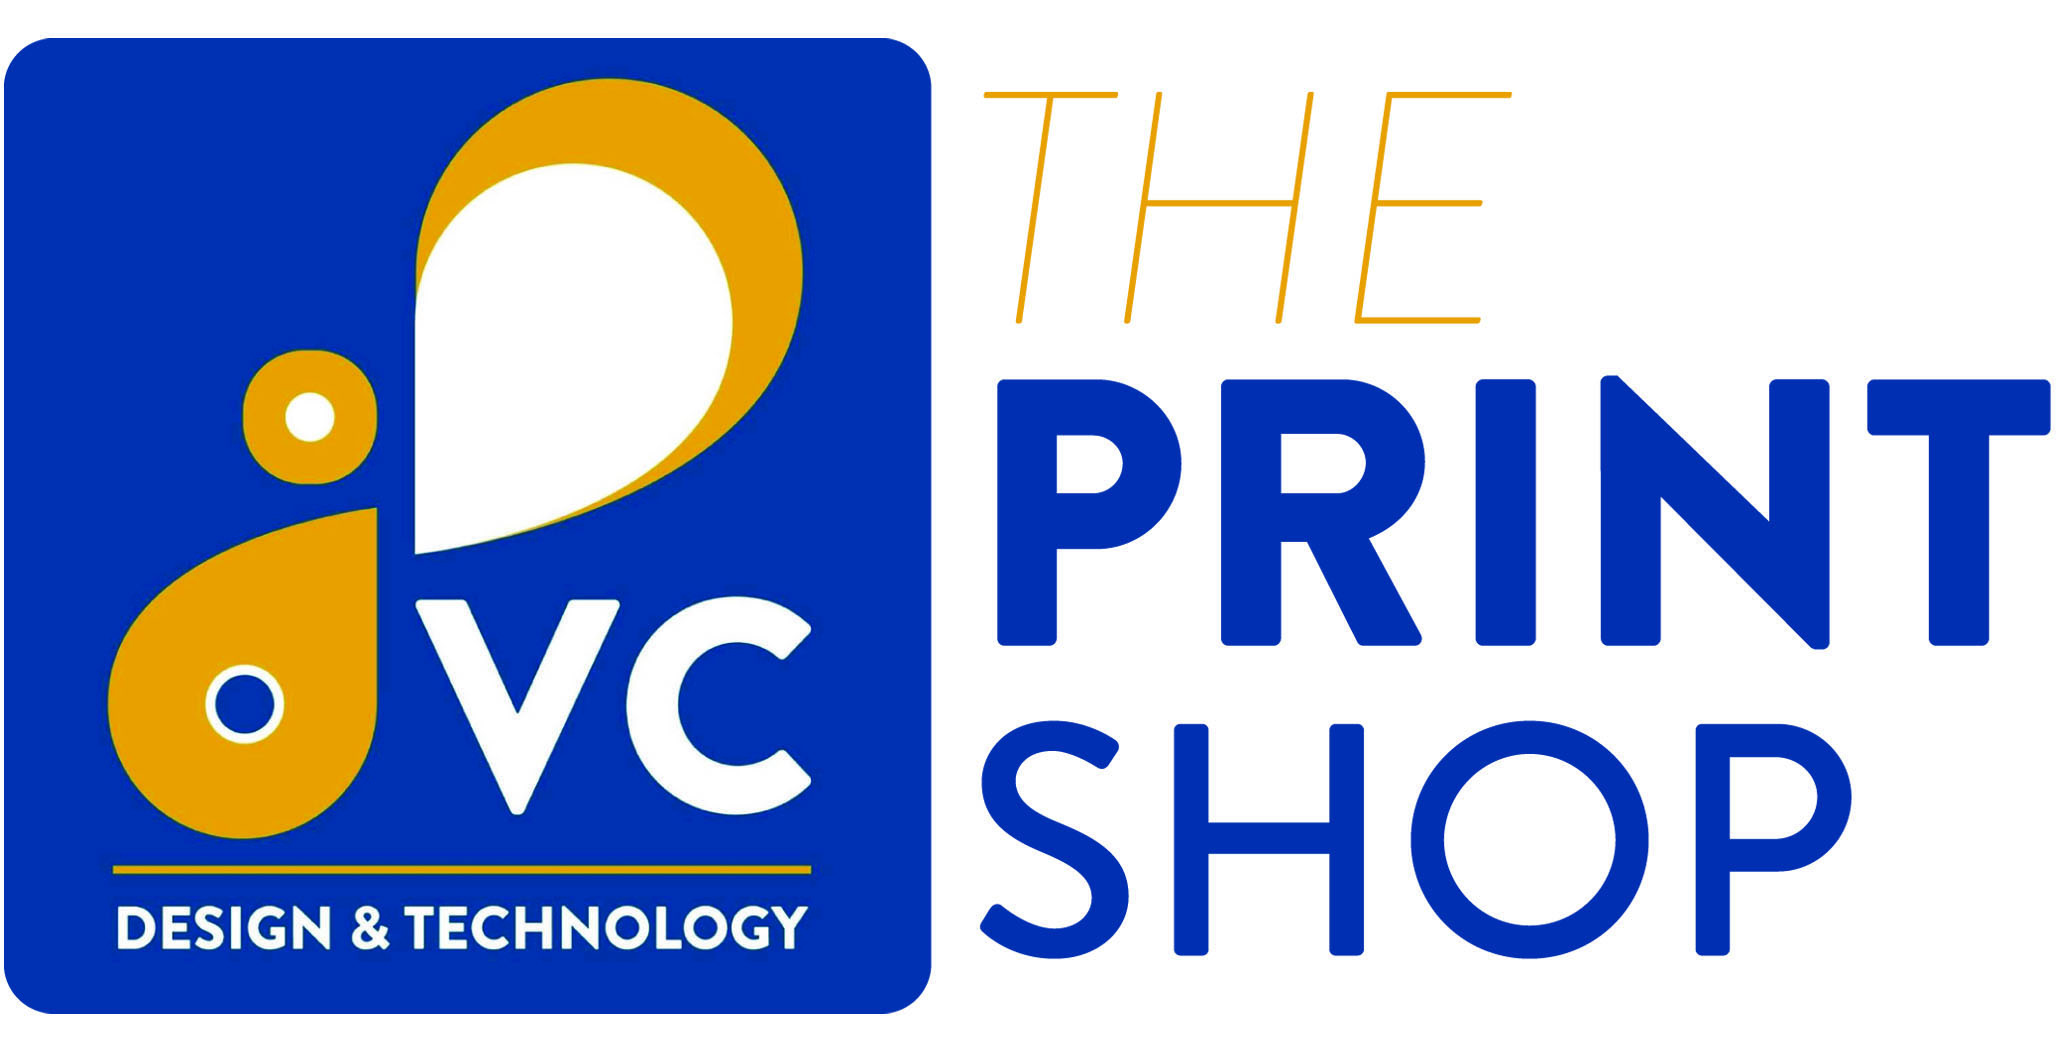 VC print shop logo